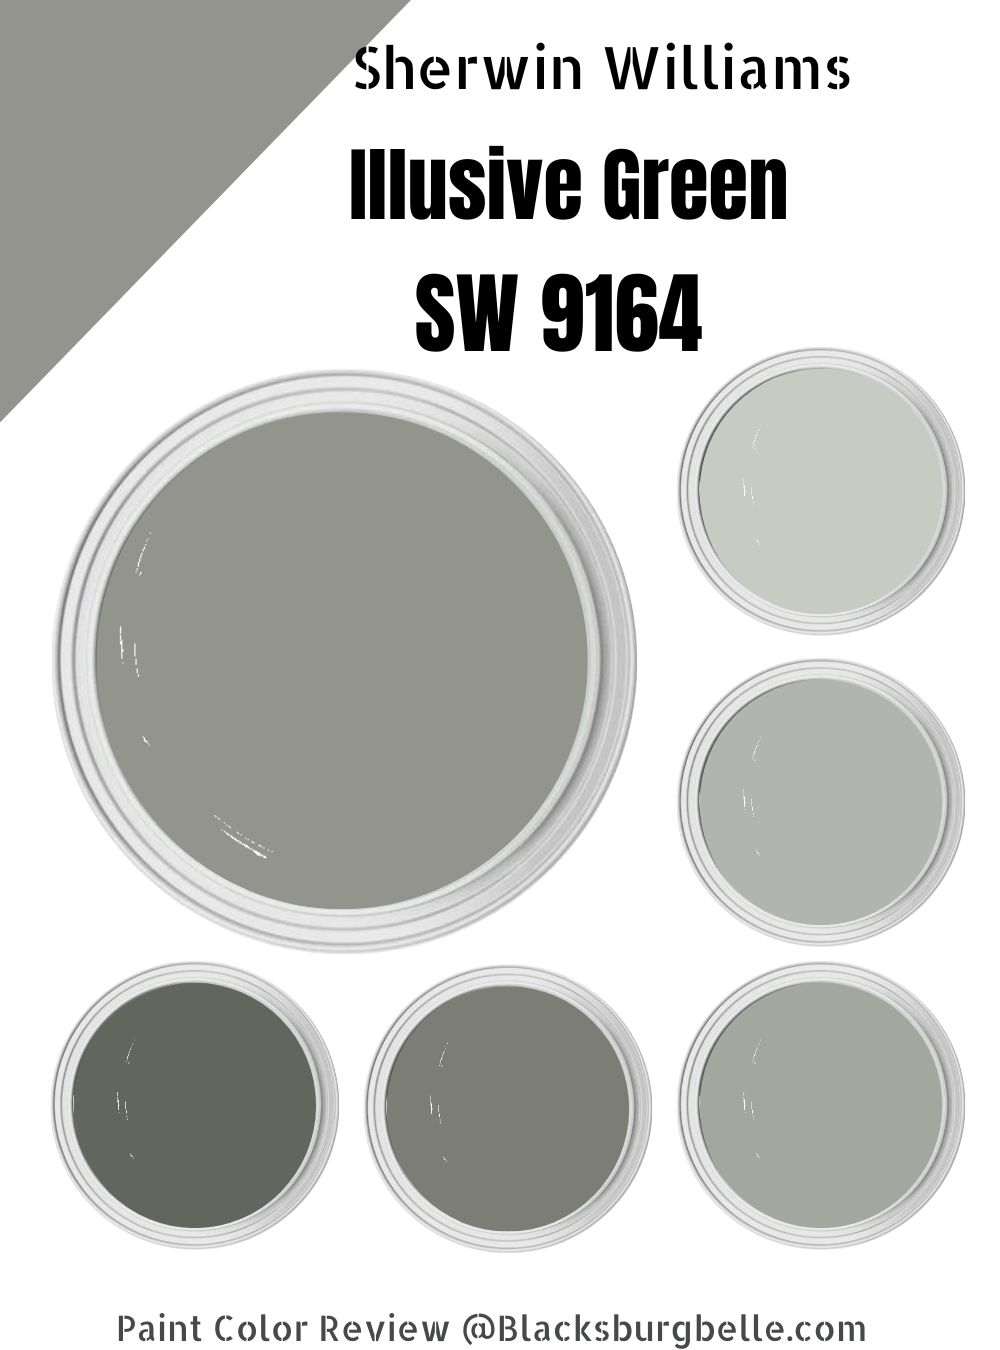 Sherwin Williams Illusive Green SW 9164 